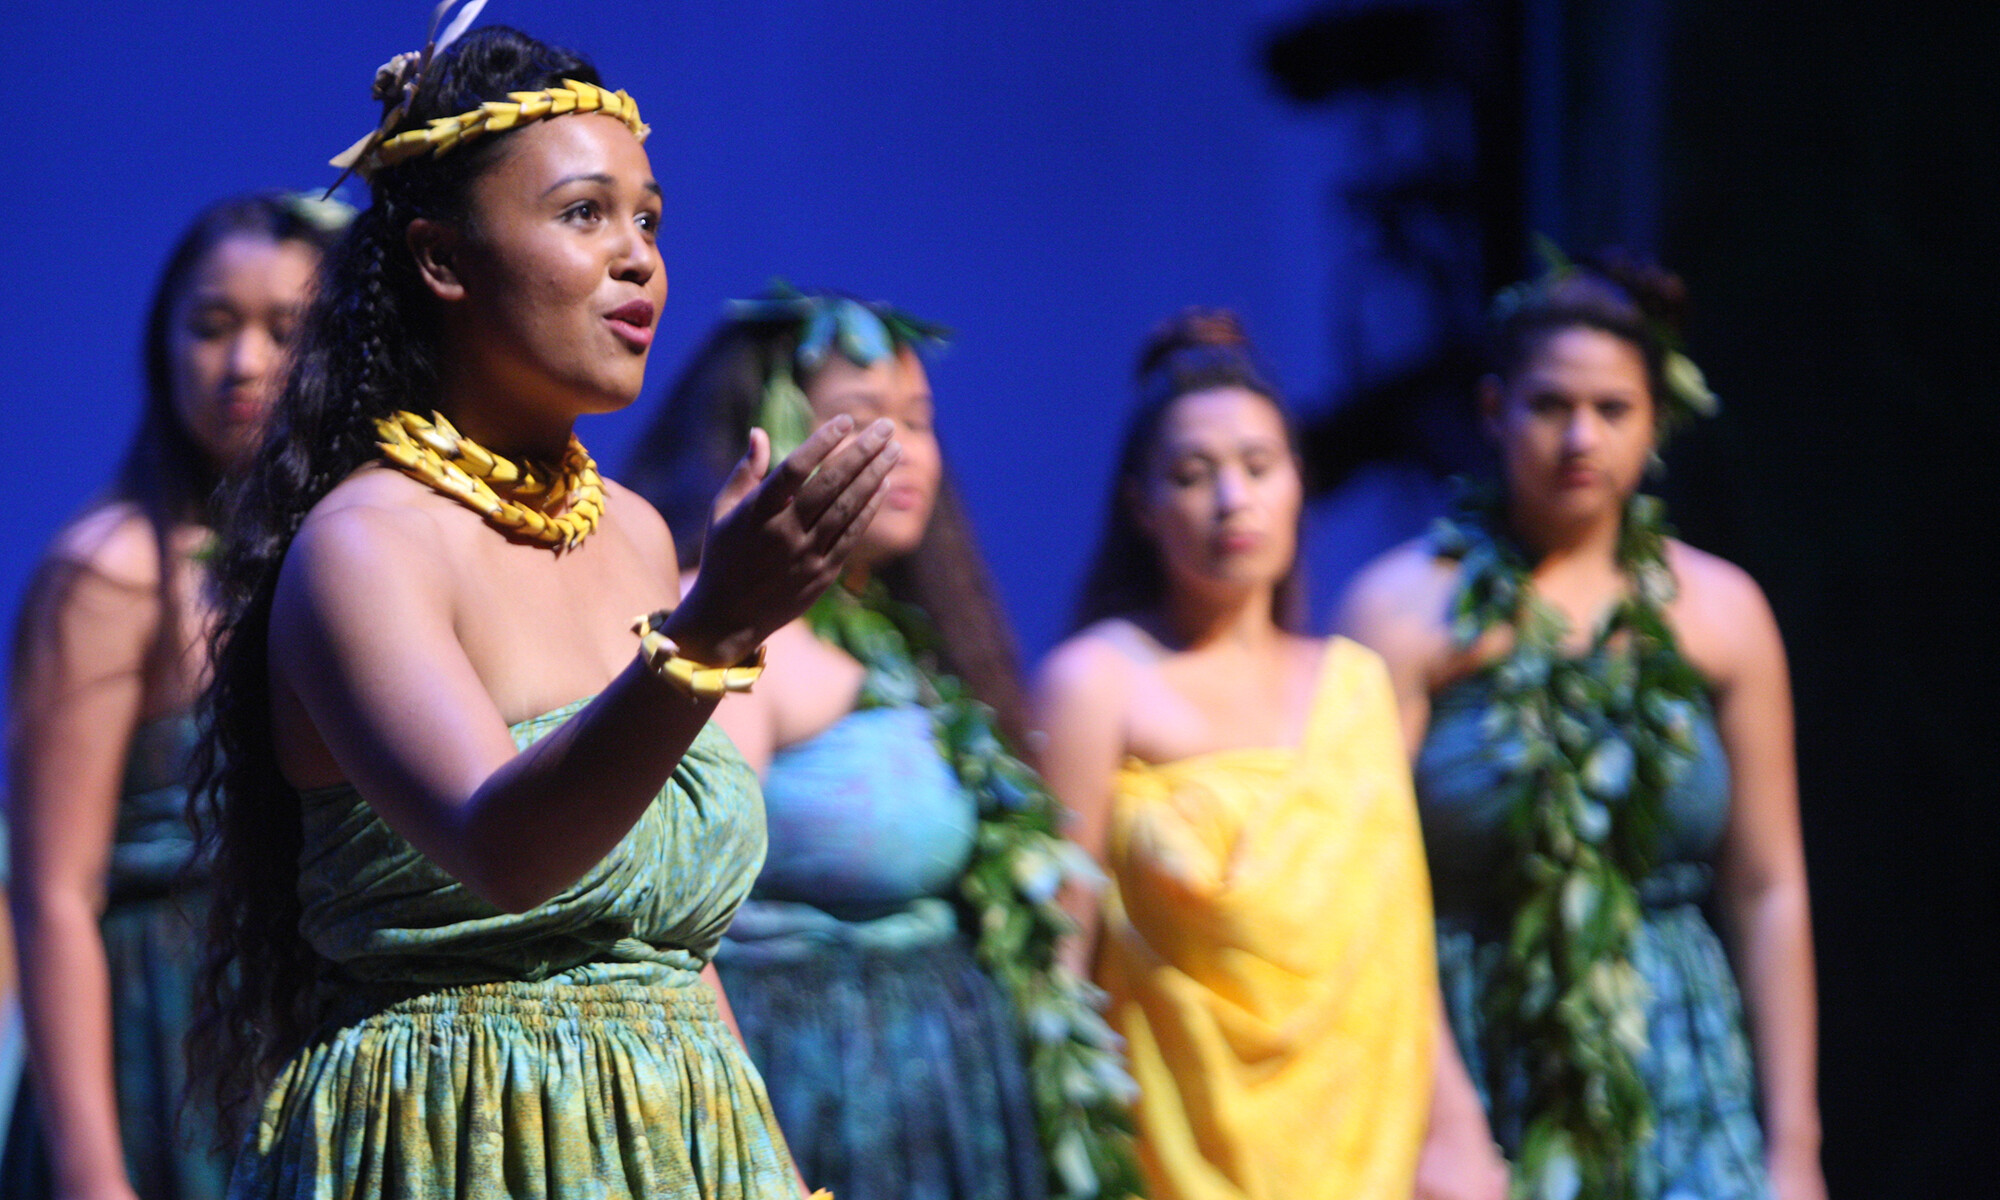 group of Hawaiian performers singing onstage